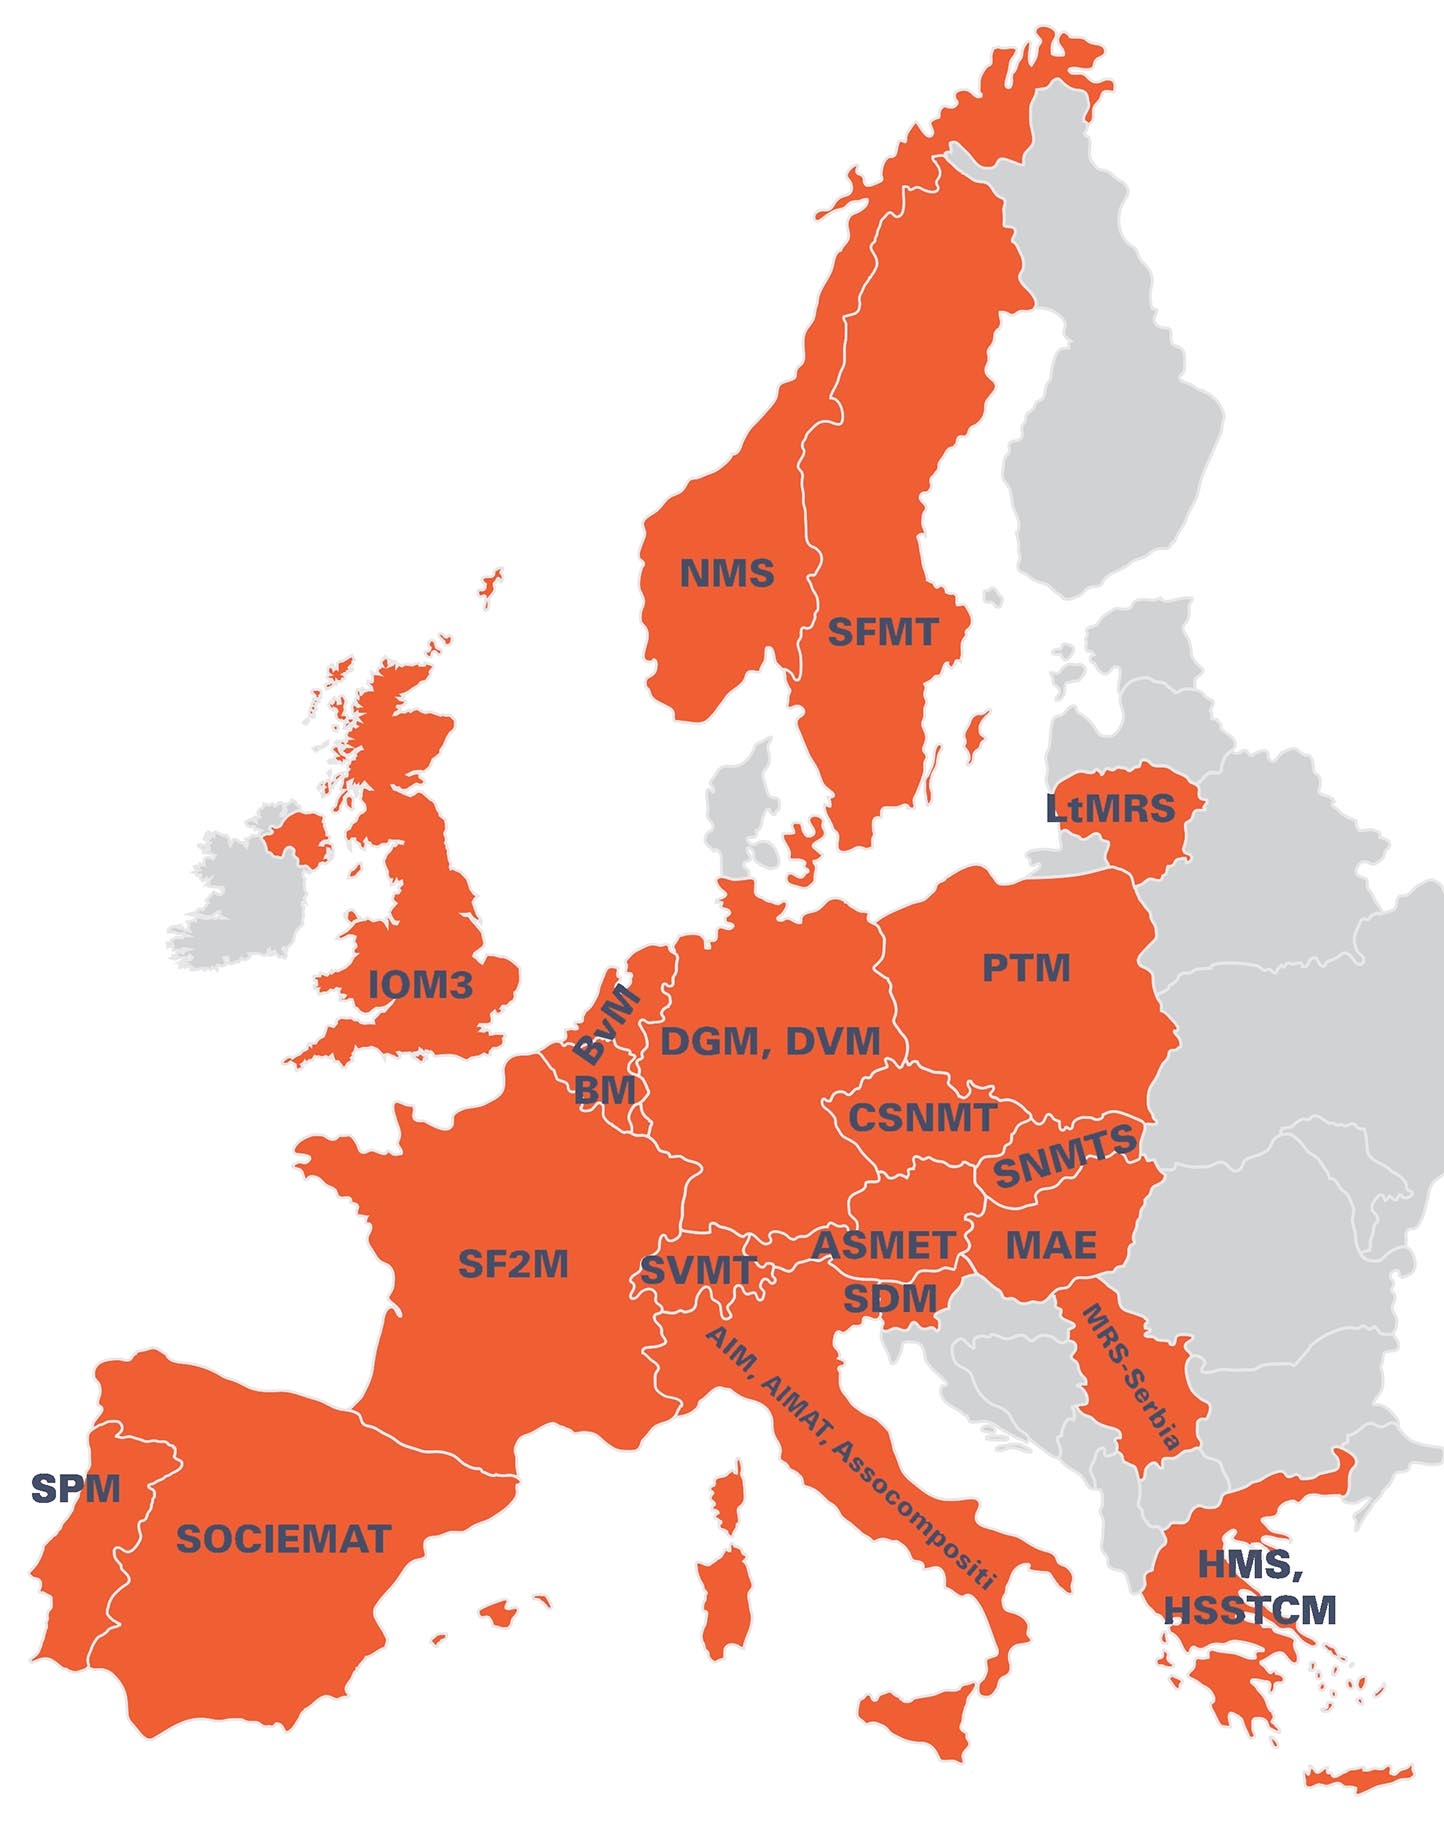 Map of FEMS members in Europe